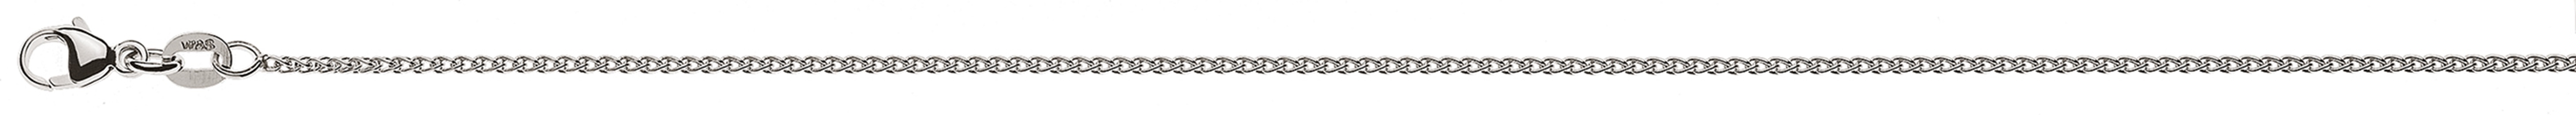 AURONOS Style Halskette Weissgold 9K Zopfkette 40cm 1.2mm